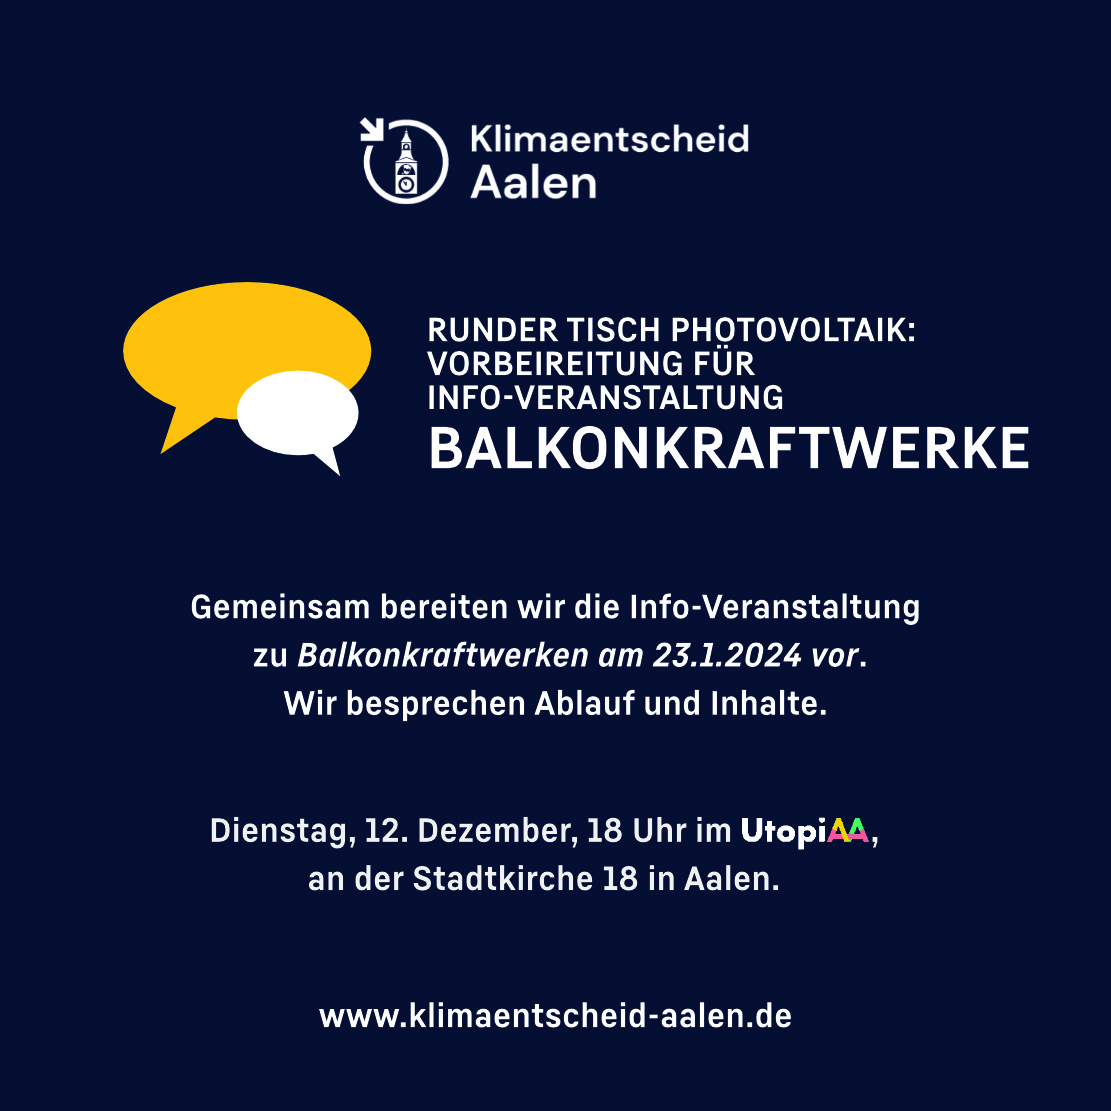 Sharepic: Event Vorbereitung für Info-Veranstaltung Balkonkraftwerke am 12. Dezember 23 im Utopiaa.